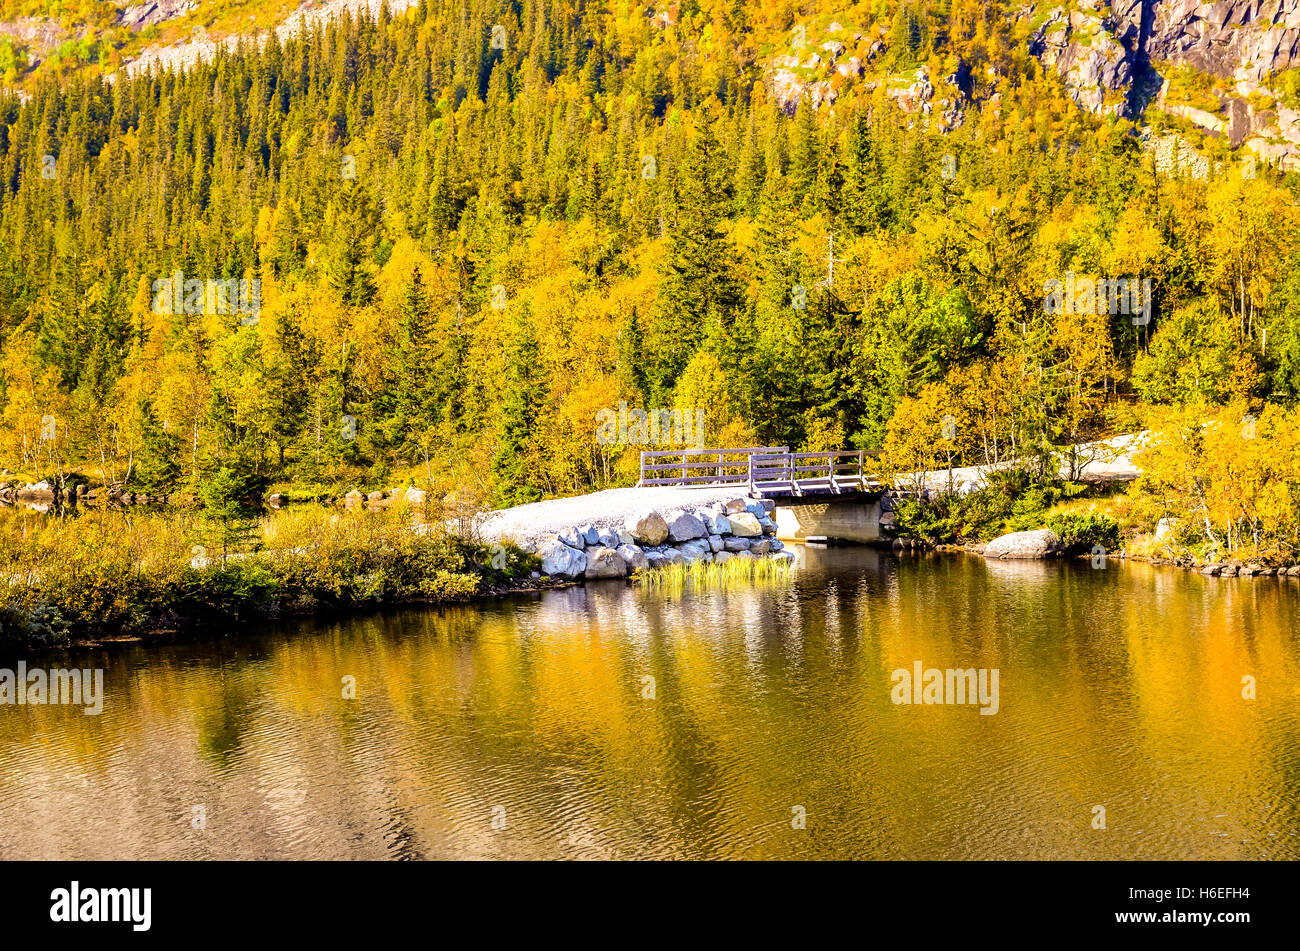 small white bridge over a fjord in autumn landscape Stock Photo